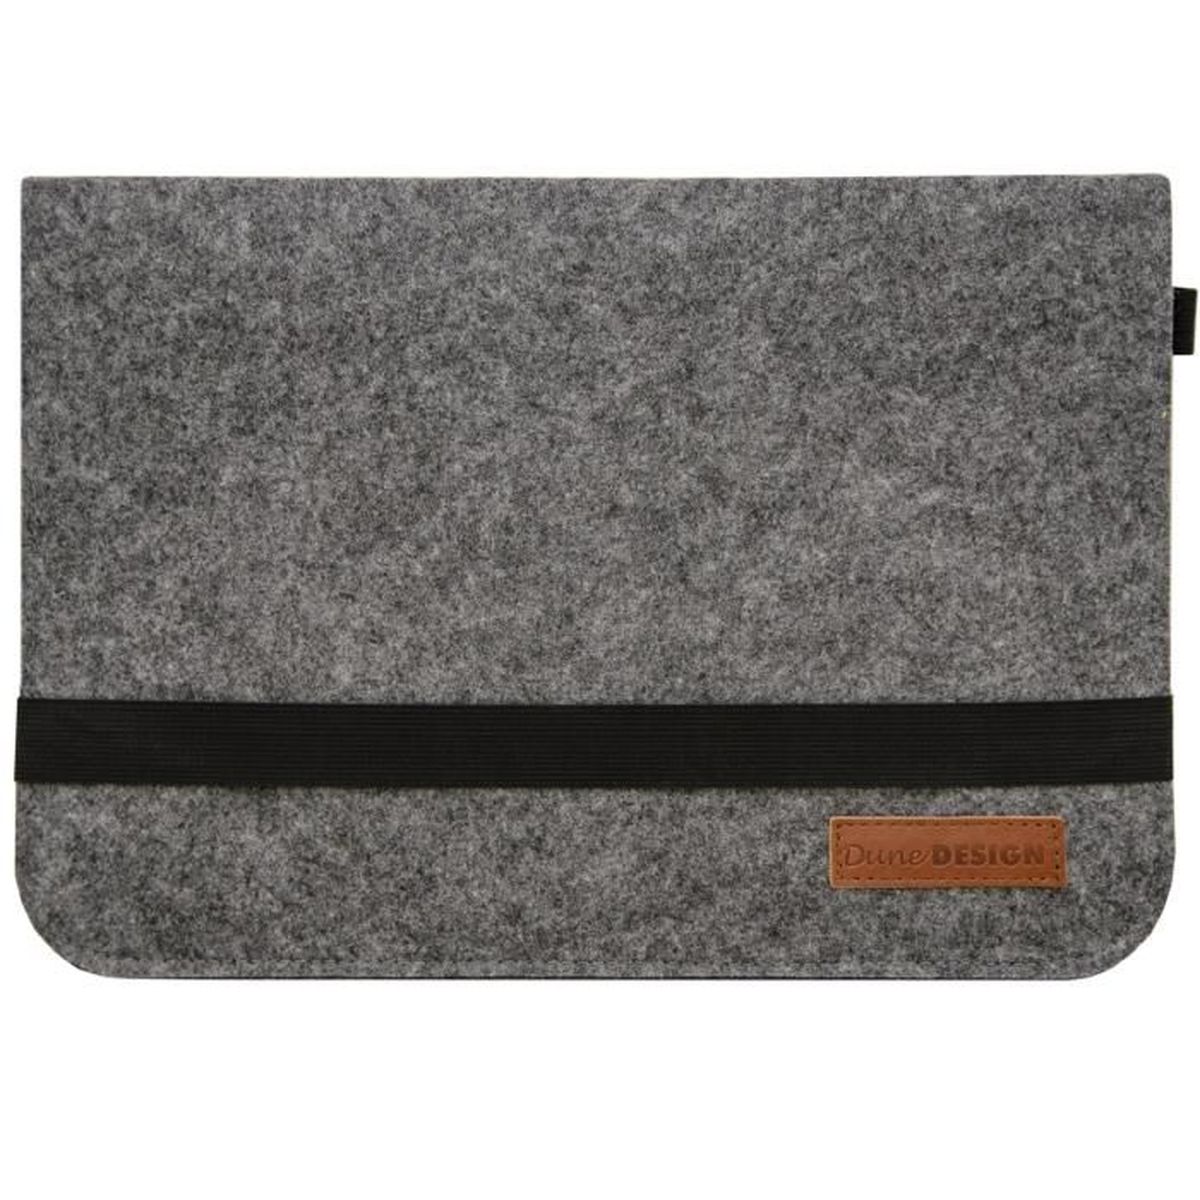 Pochette de Pc Portable 14 pouces couleur gris clair pour ordinateur 13  13.3 13,5 et 14, tissu de haute qualité imperméable